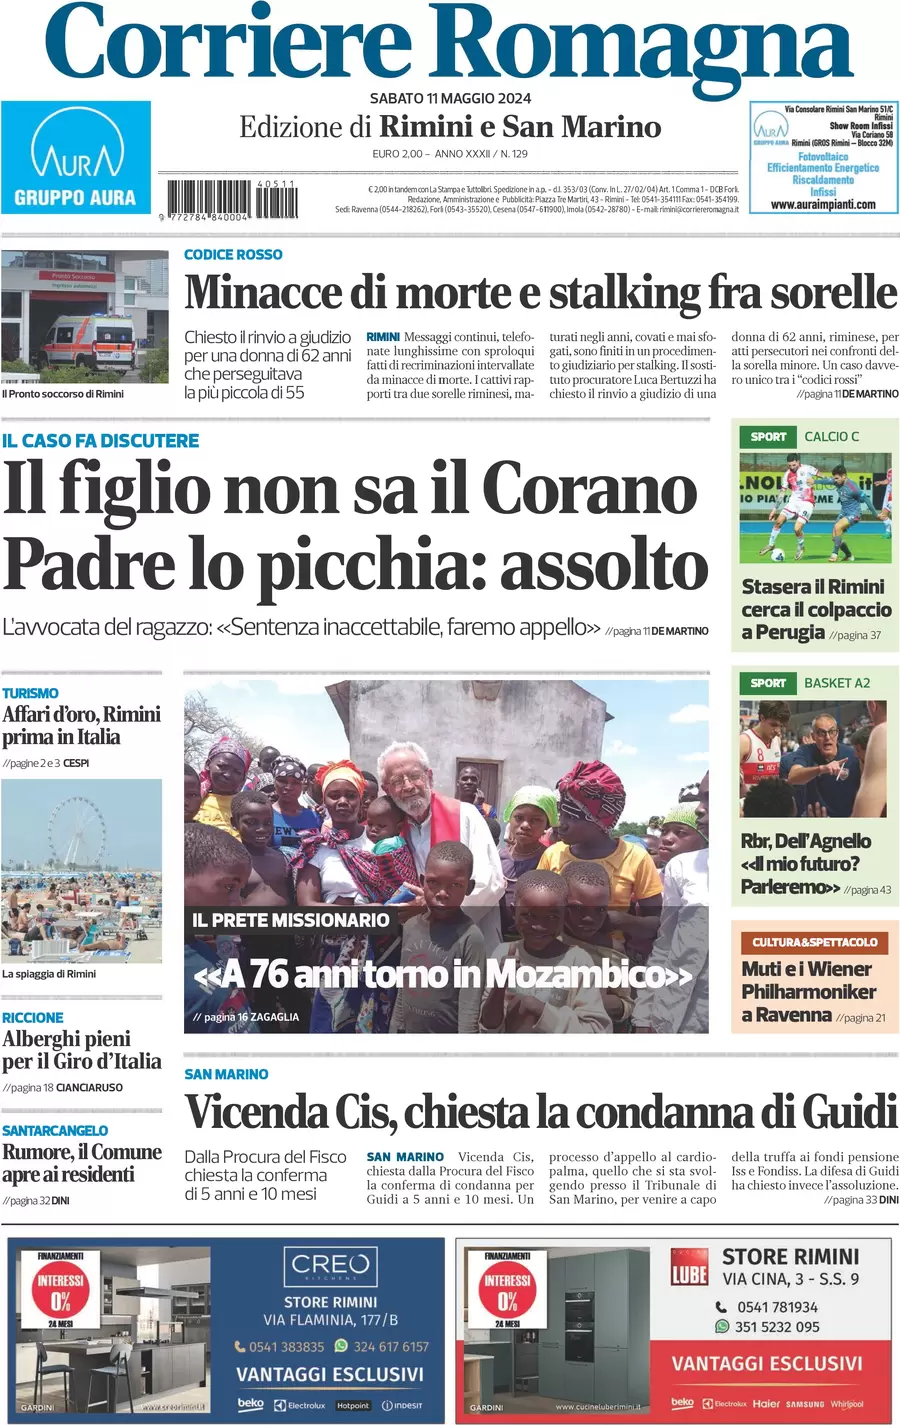 Anteprima prima pagina della rasegna stampa di ieri 2024-05-11 - corriere-romagna/